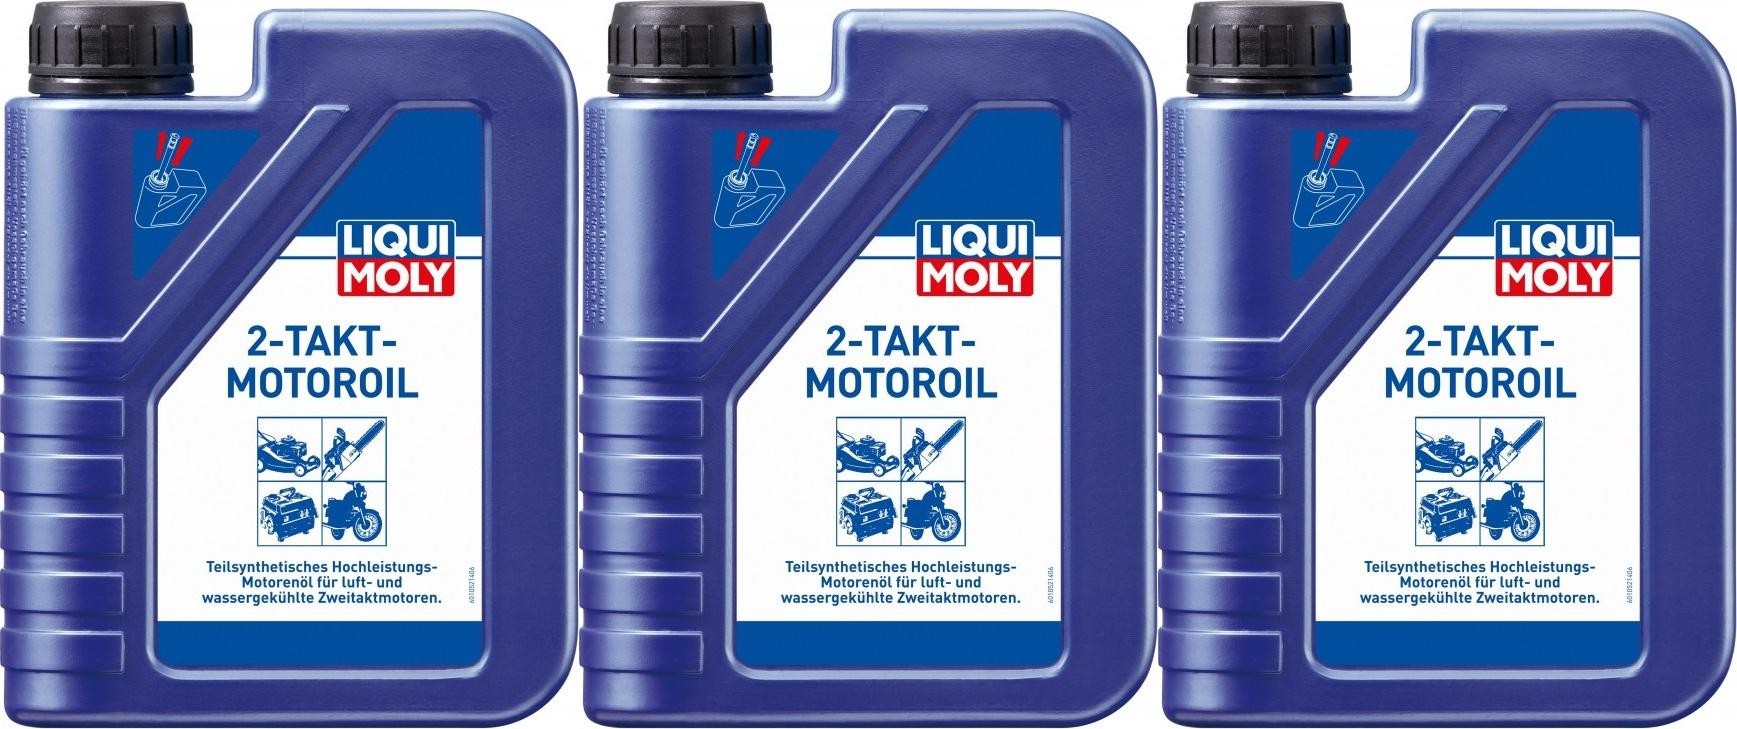 LIQUI MOLY 2-Takt-Motorsägen-Öl, 1 L, 2-Takt-Öl